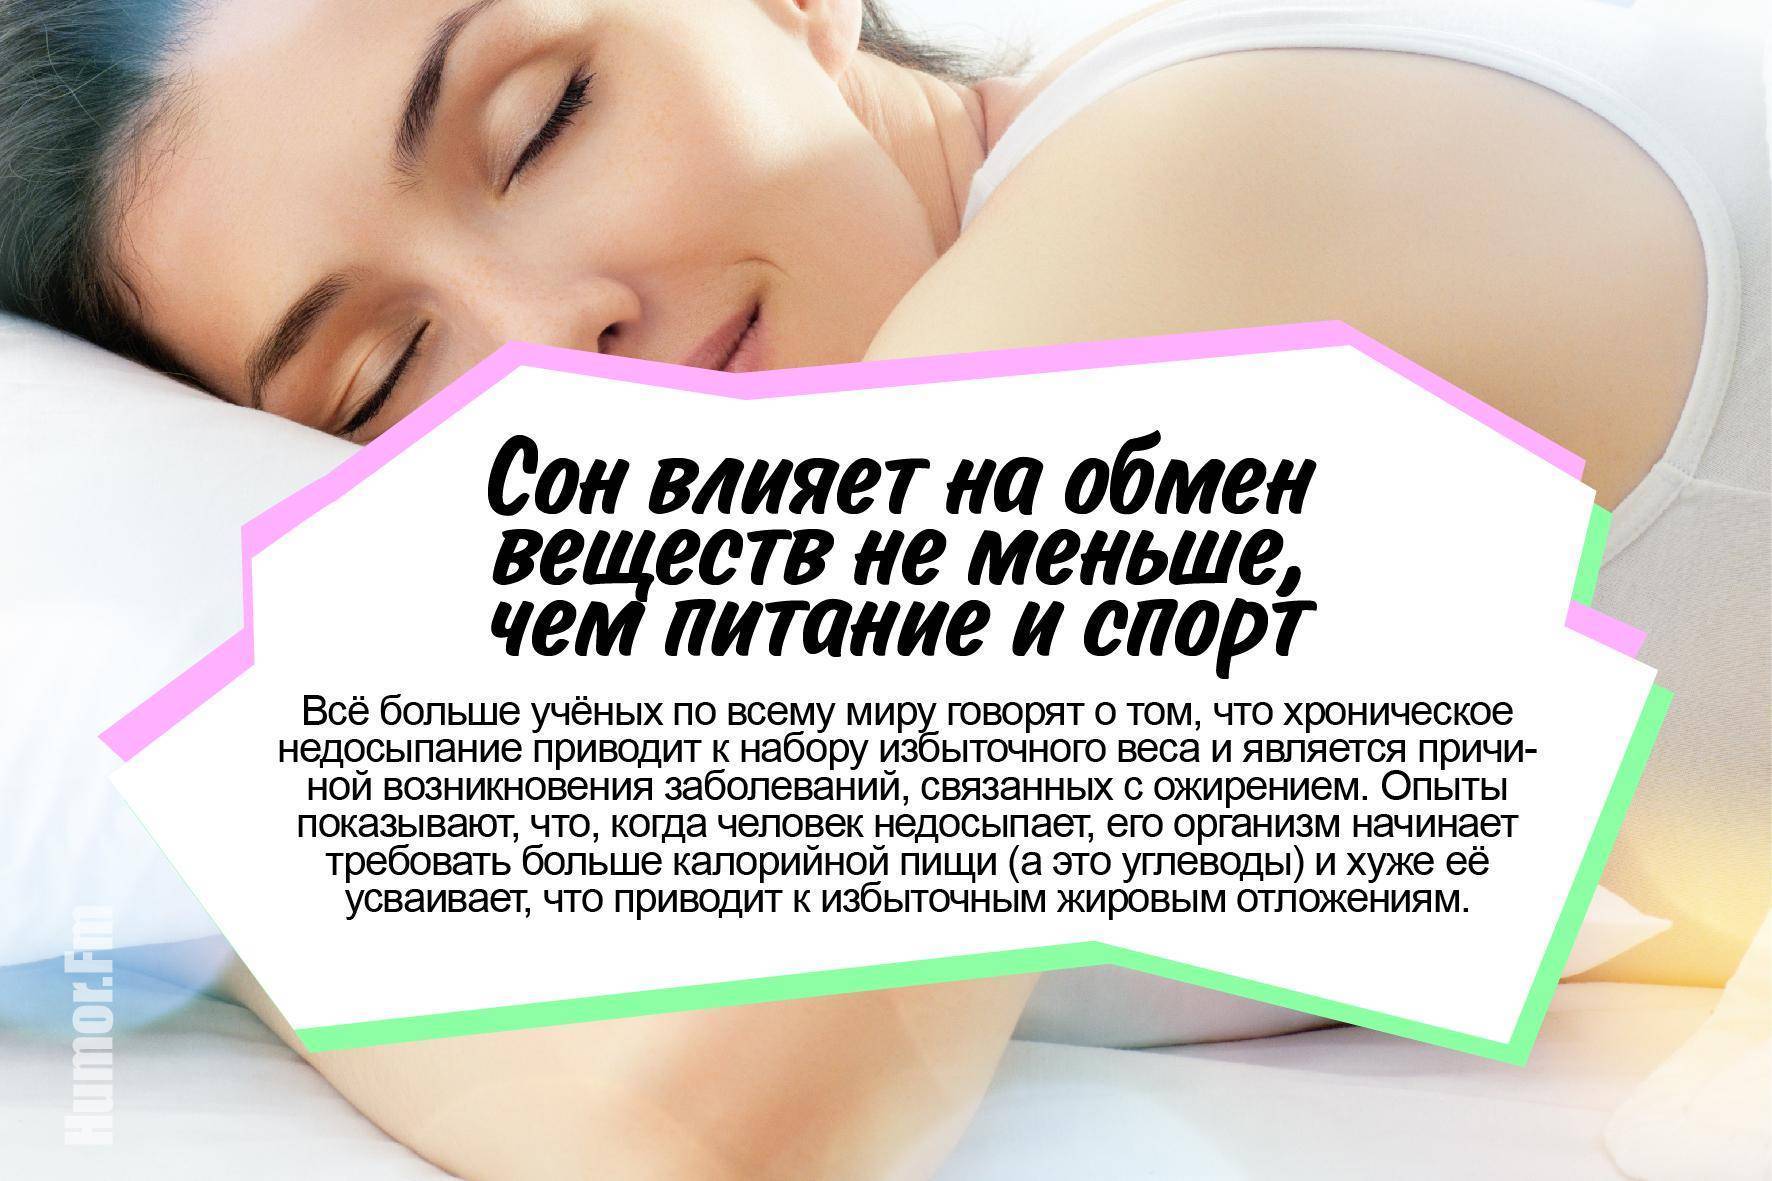 Что нужно знать, чтобы улучшить качество сна?